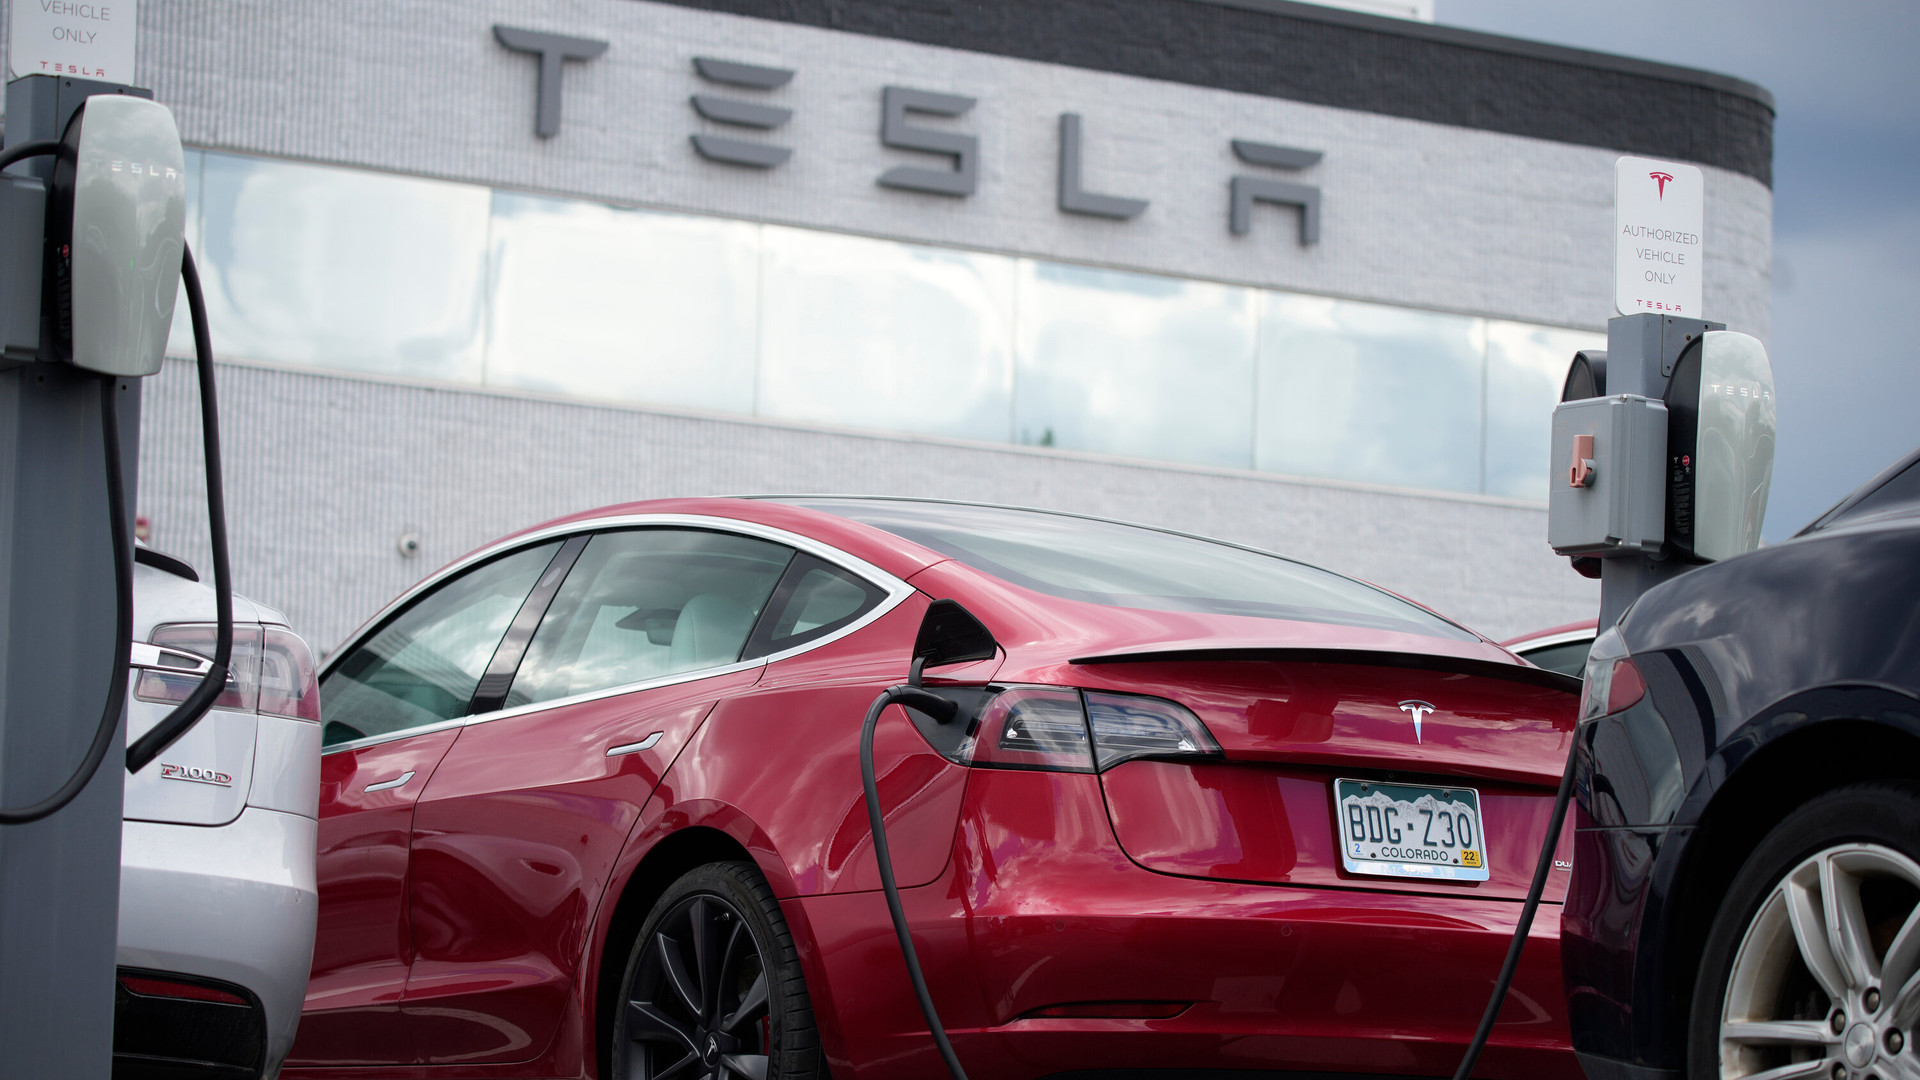 Sau nhiều lần giảm giá chấn động, Tesla bất ngờ 'quay đầu' tăng giá nhưng mục đích tăng mới cho thấy khả năng tính toán thần sầu của tỷ phú Elon Musk - Ảnh 1.